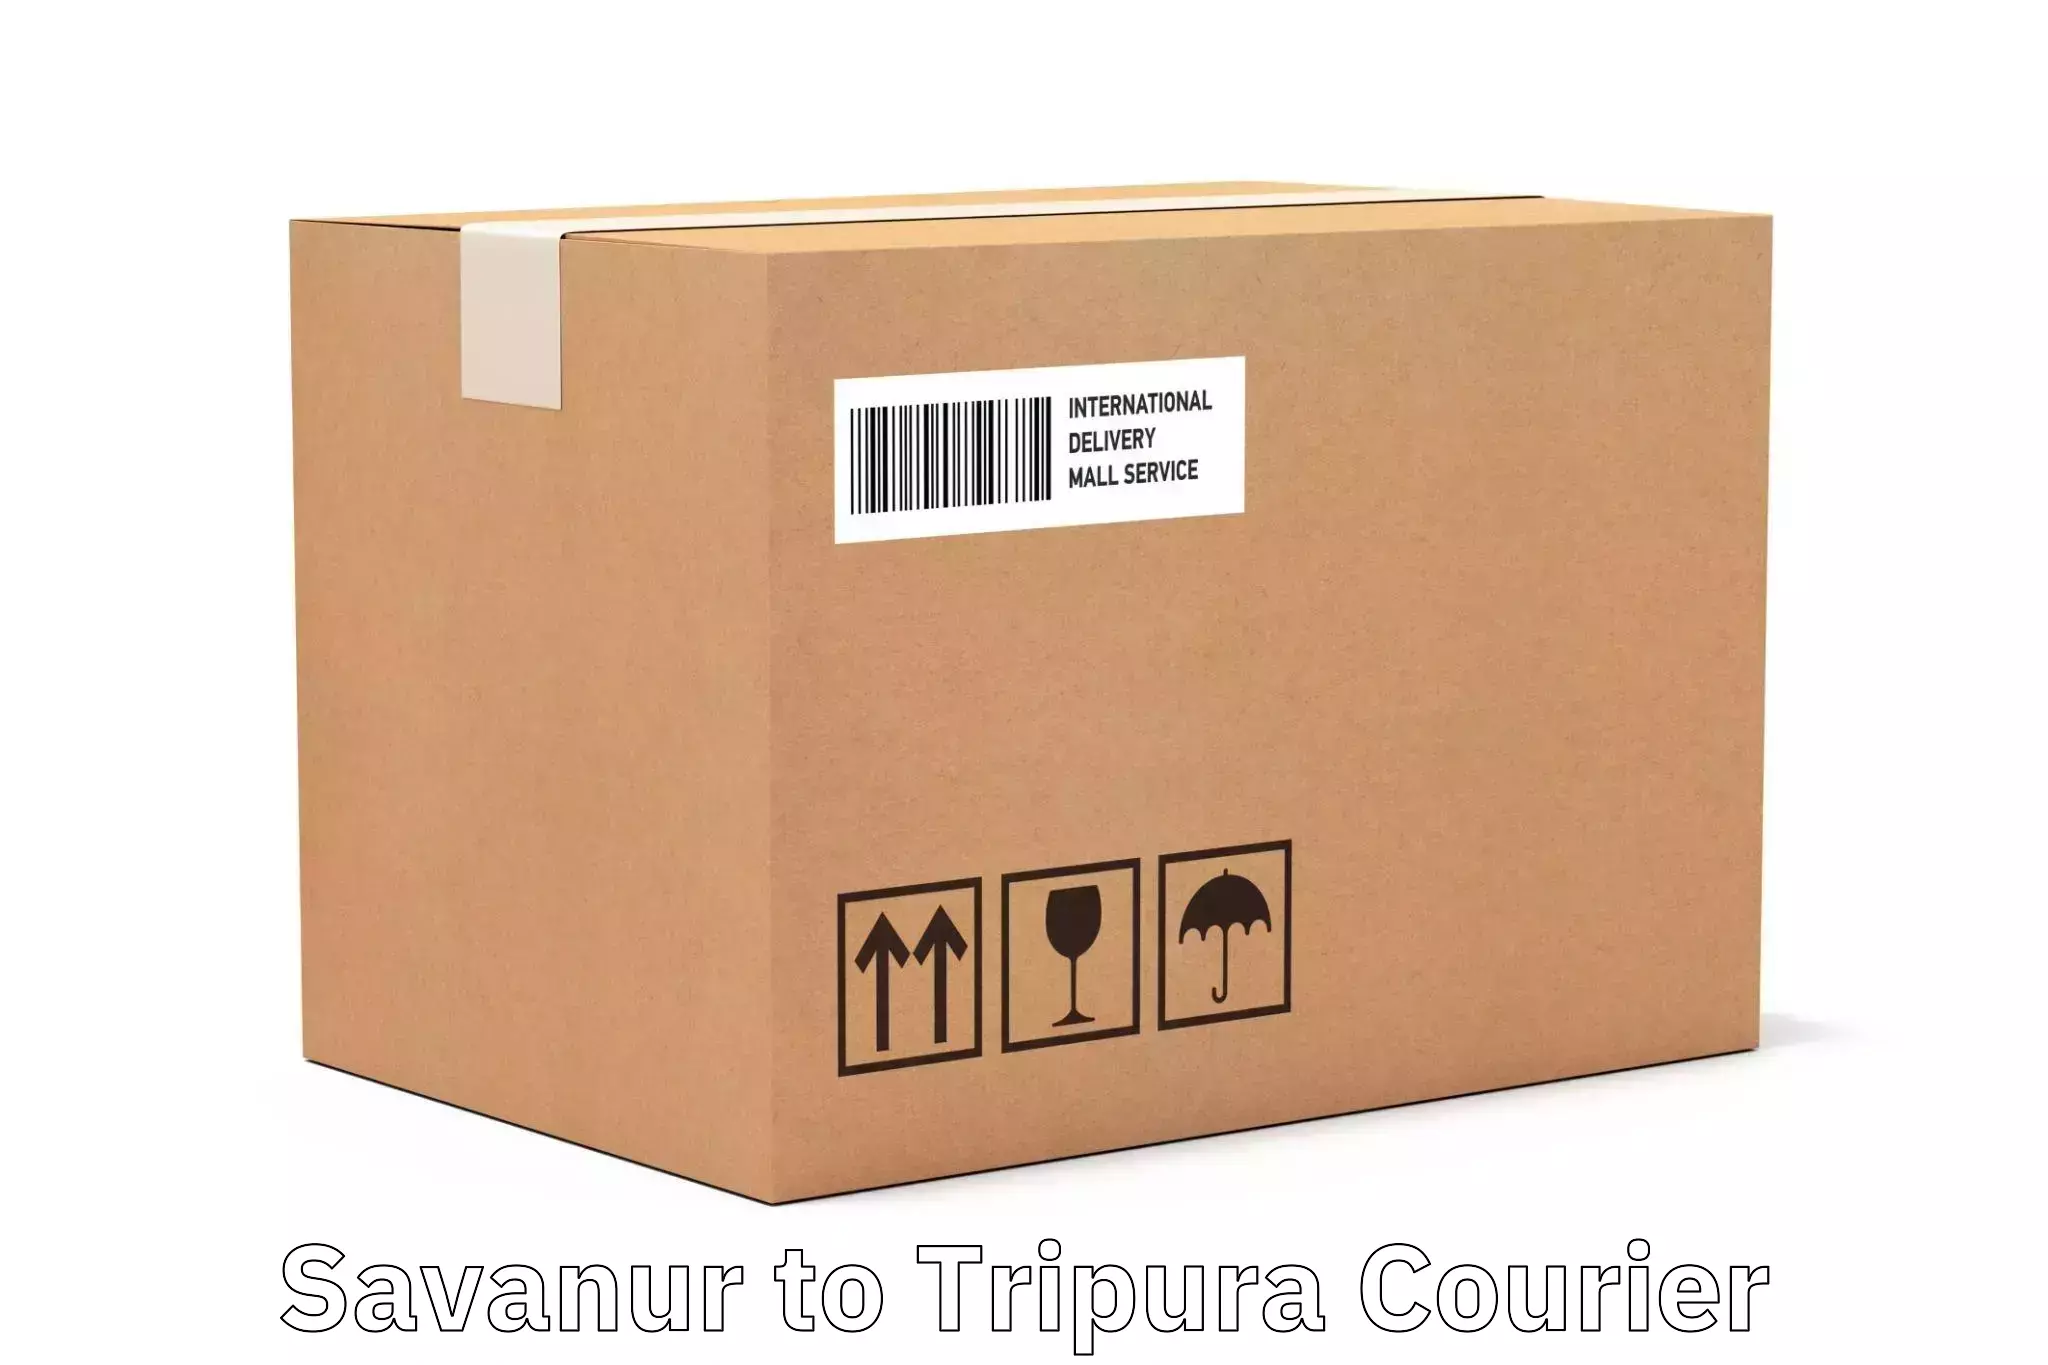 Efficient parcel delivery Savanur to Manughat